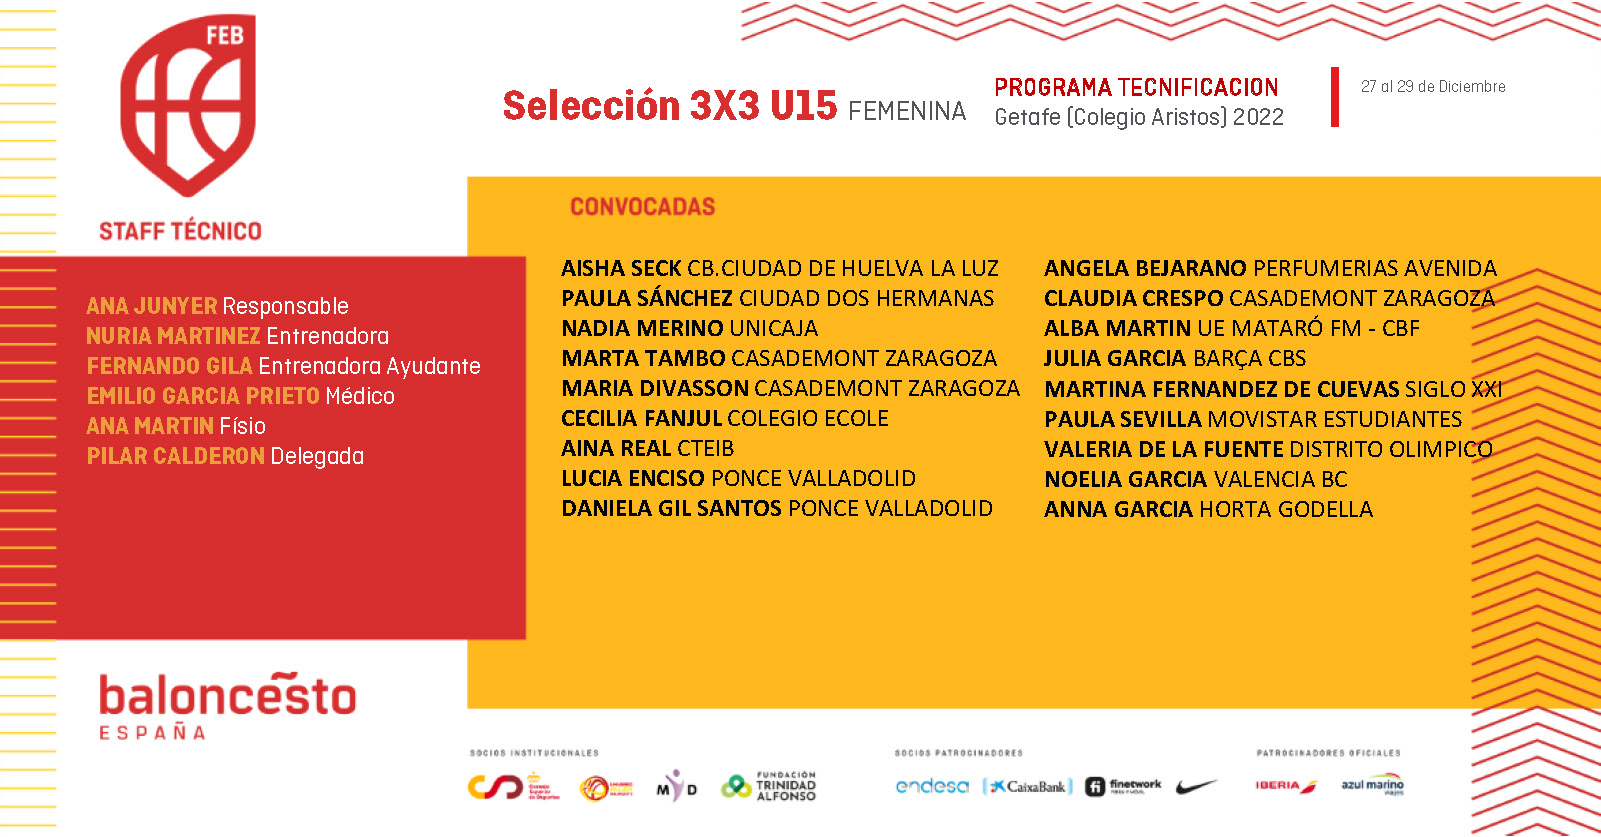 Selección 3x3 U15 Femenina. Programa de Tecnificación (Diciembre 2022)